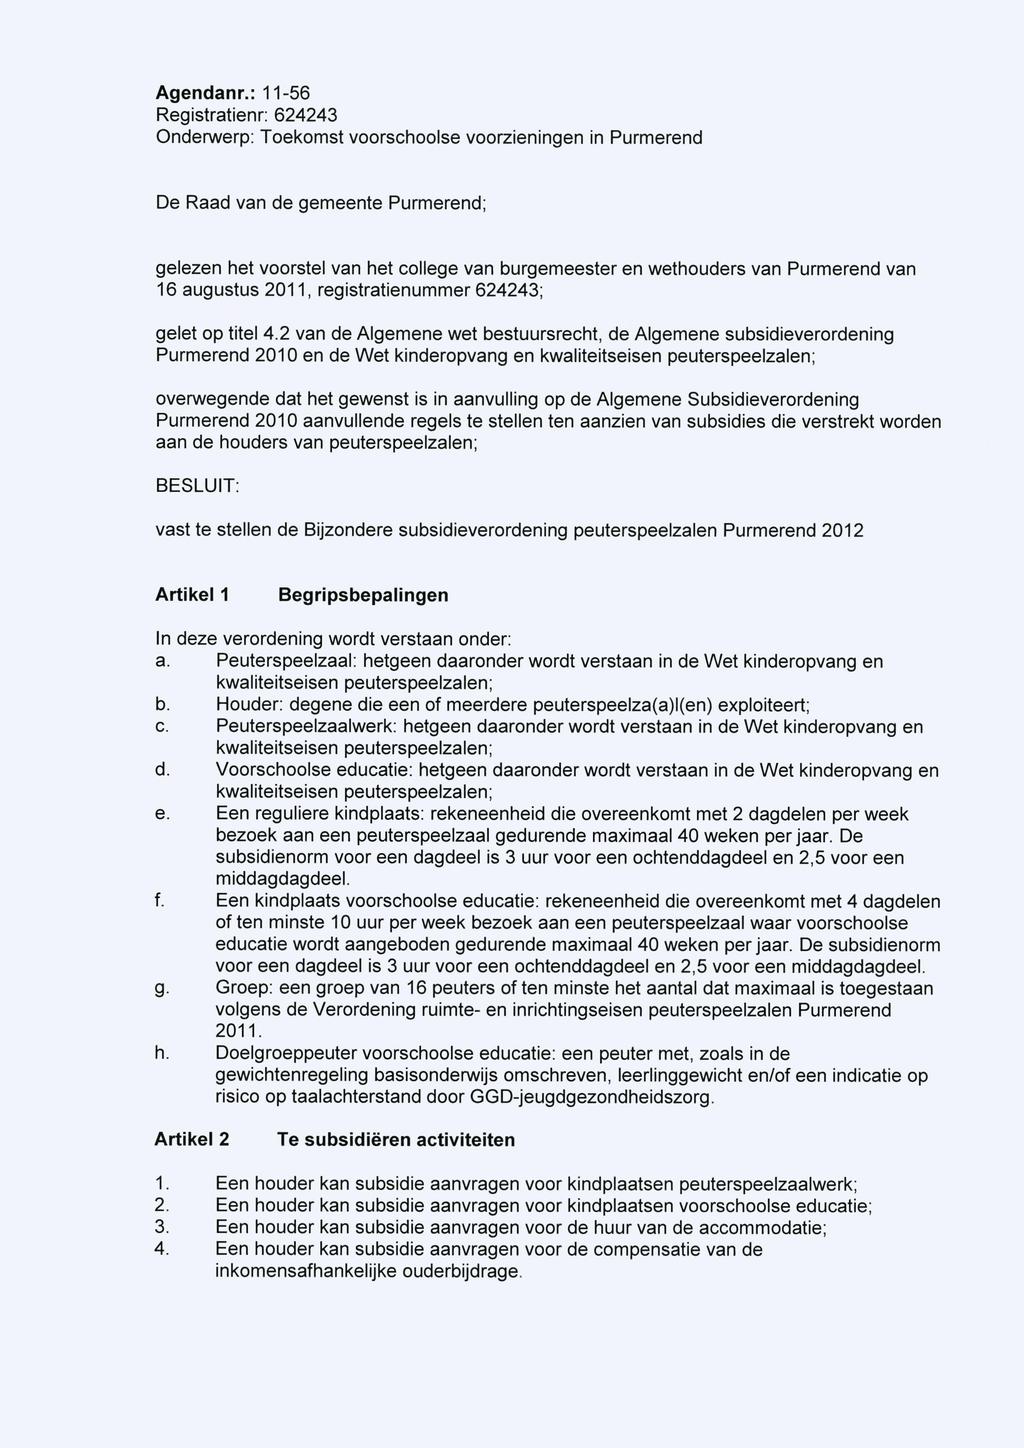 De Raad van de gemeente Purmerend; gelezen het voorstel van het college van burgemeester en wethouders van Purmerend van 16 augustus 2011, registratienummer 624243; gelet op titel 4.